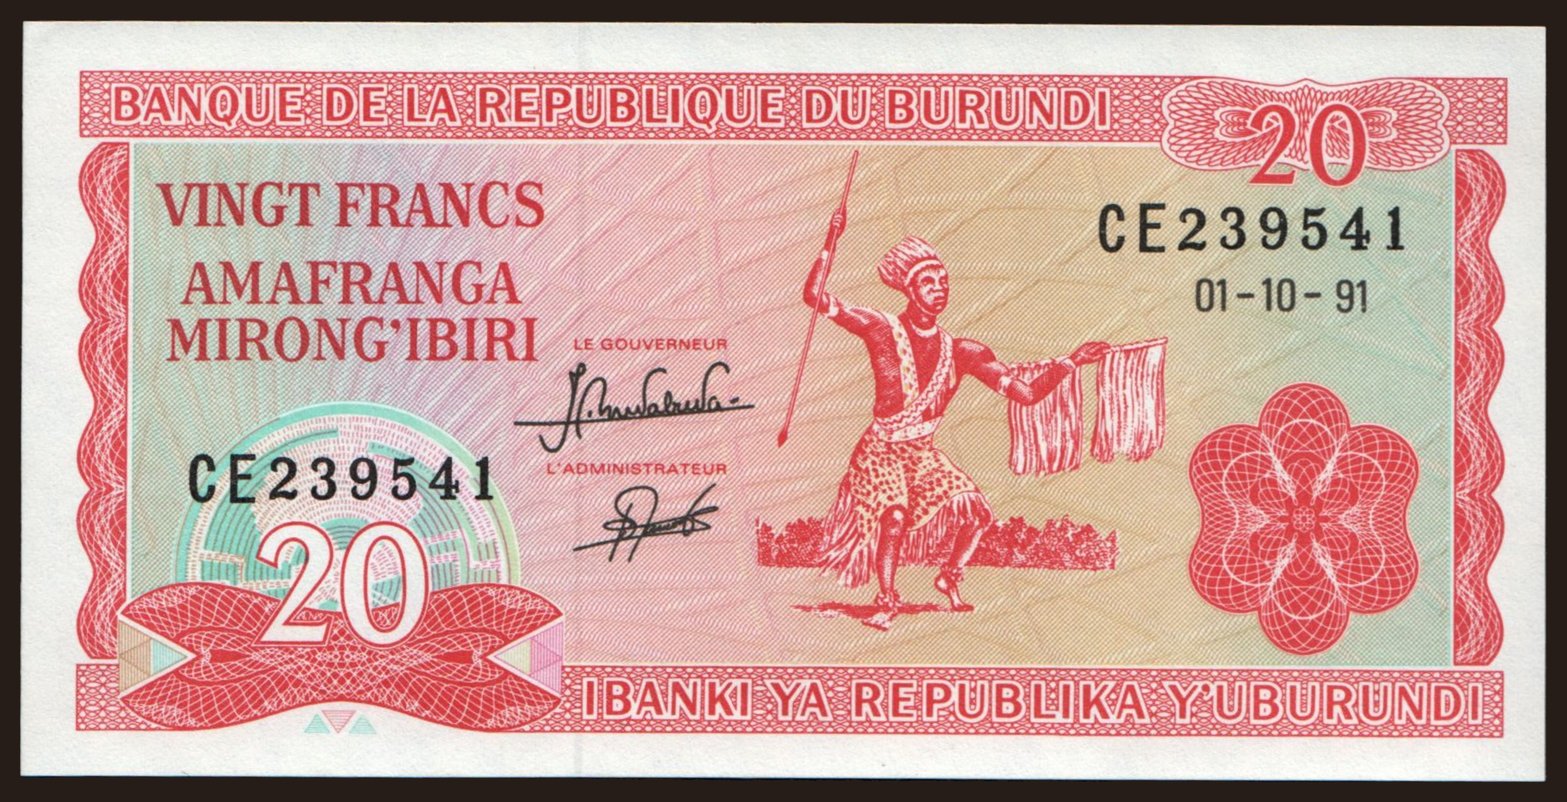 20 francs, 1991